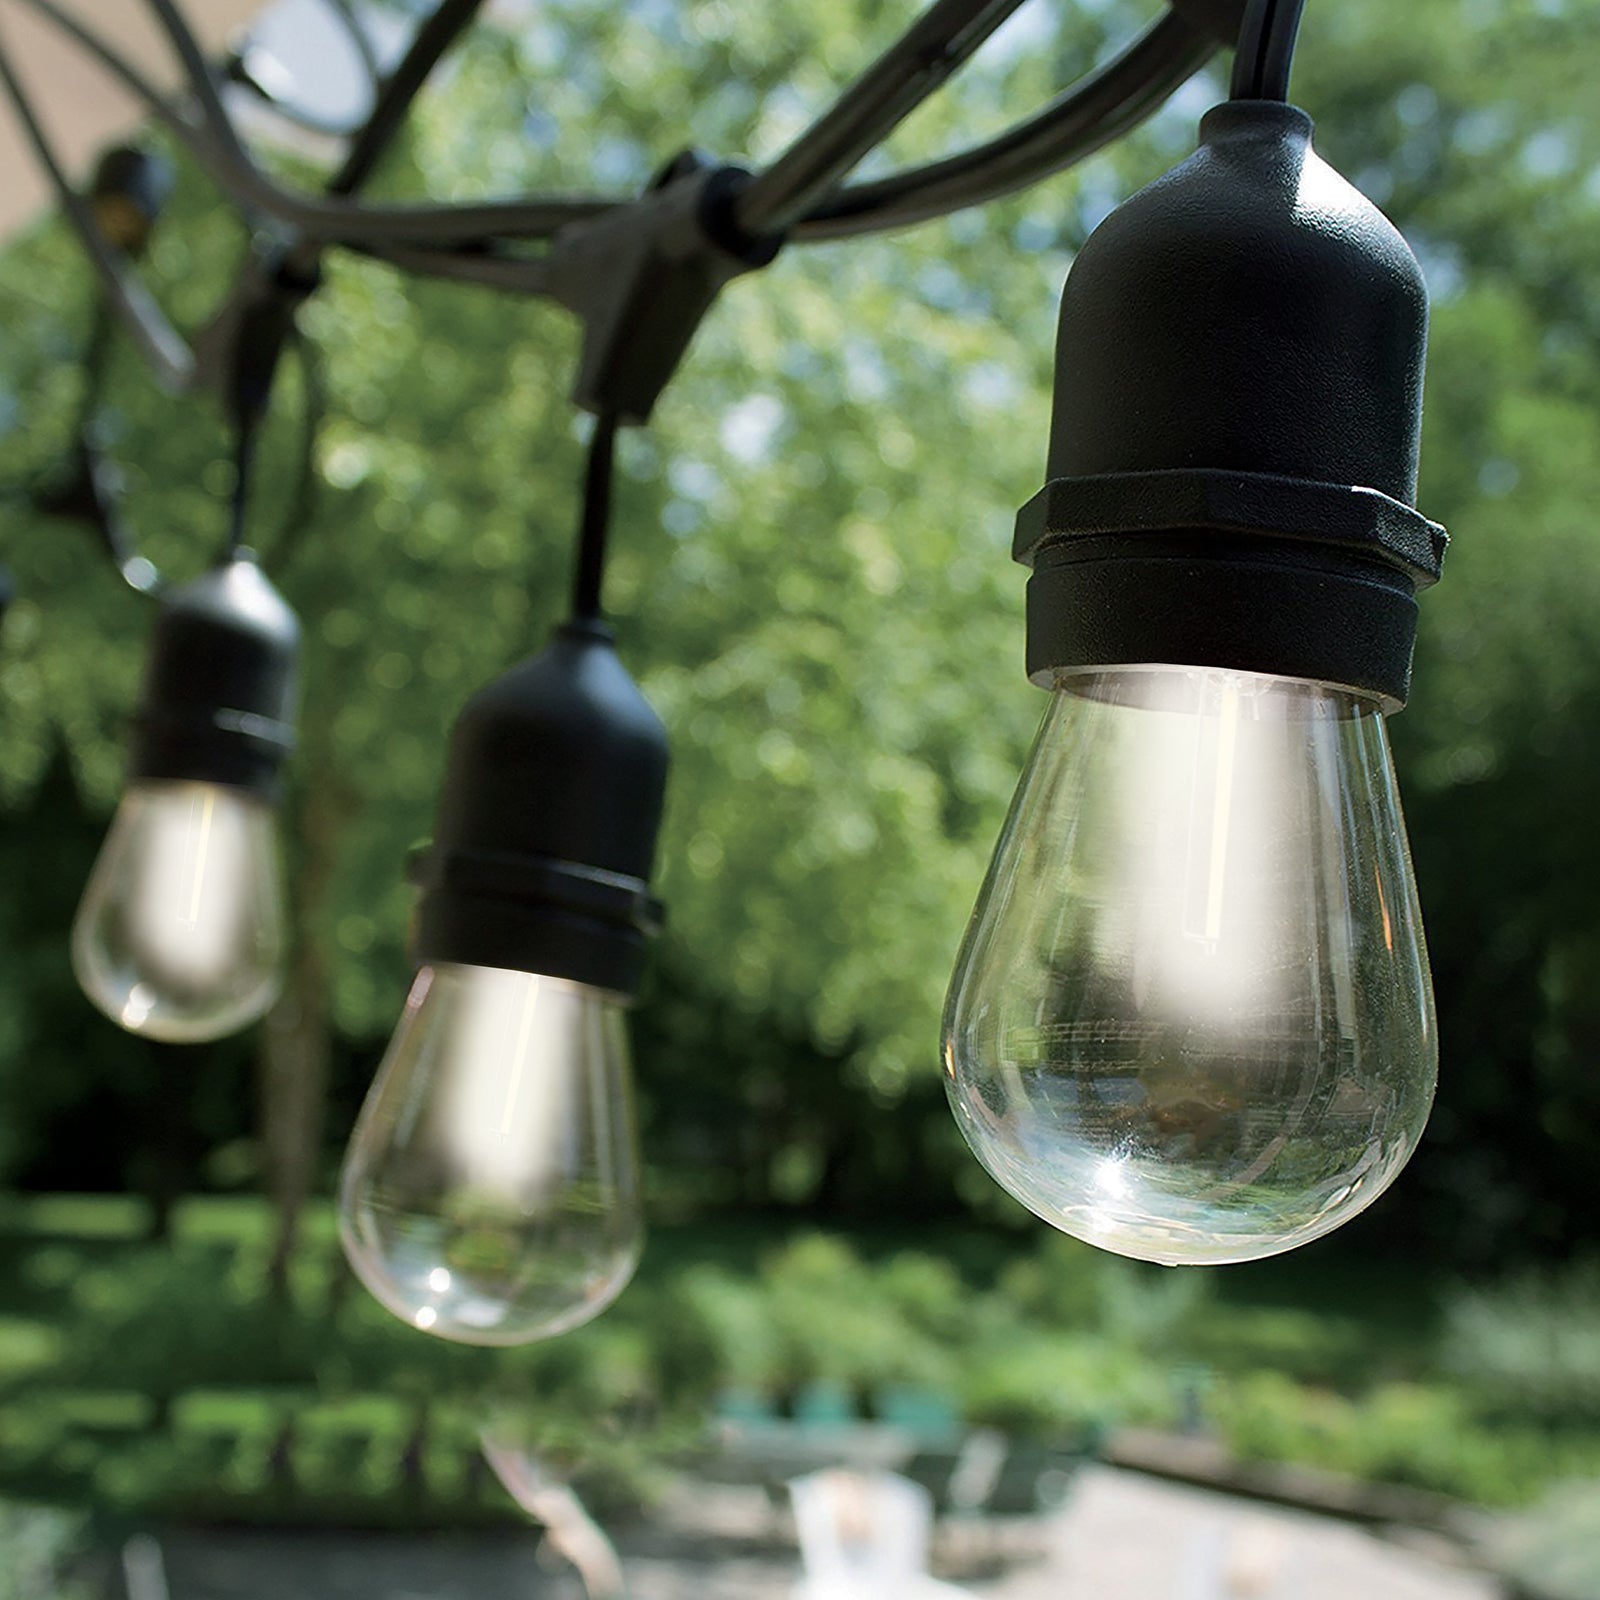 Edison Globe Solar Powered Lamp String Lights - White - 20 Lights